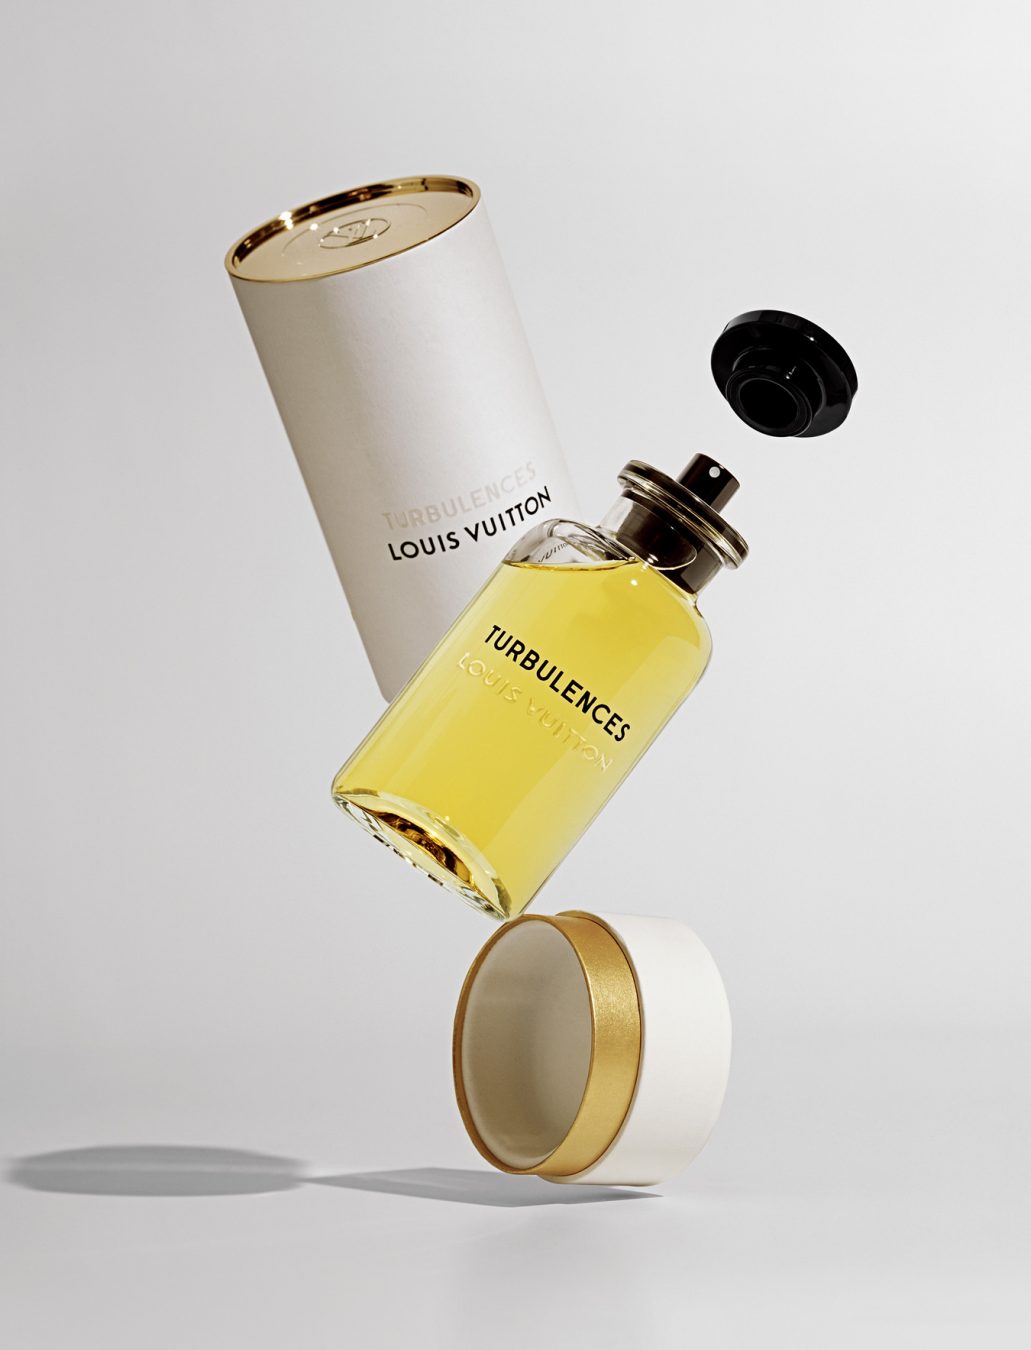 Louis Vuitton Fragrance Collection - Le Parfums Louis Vuitton